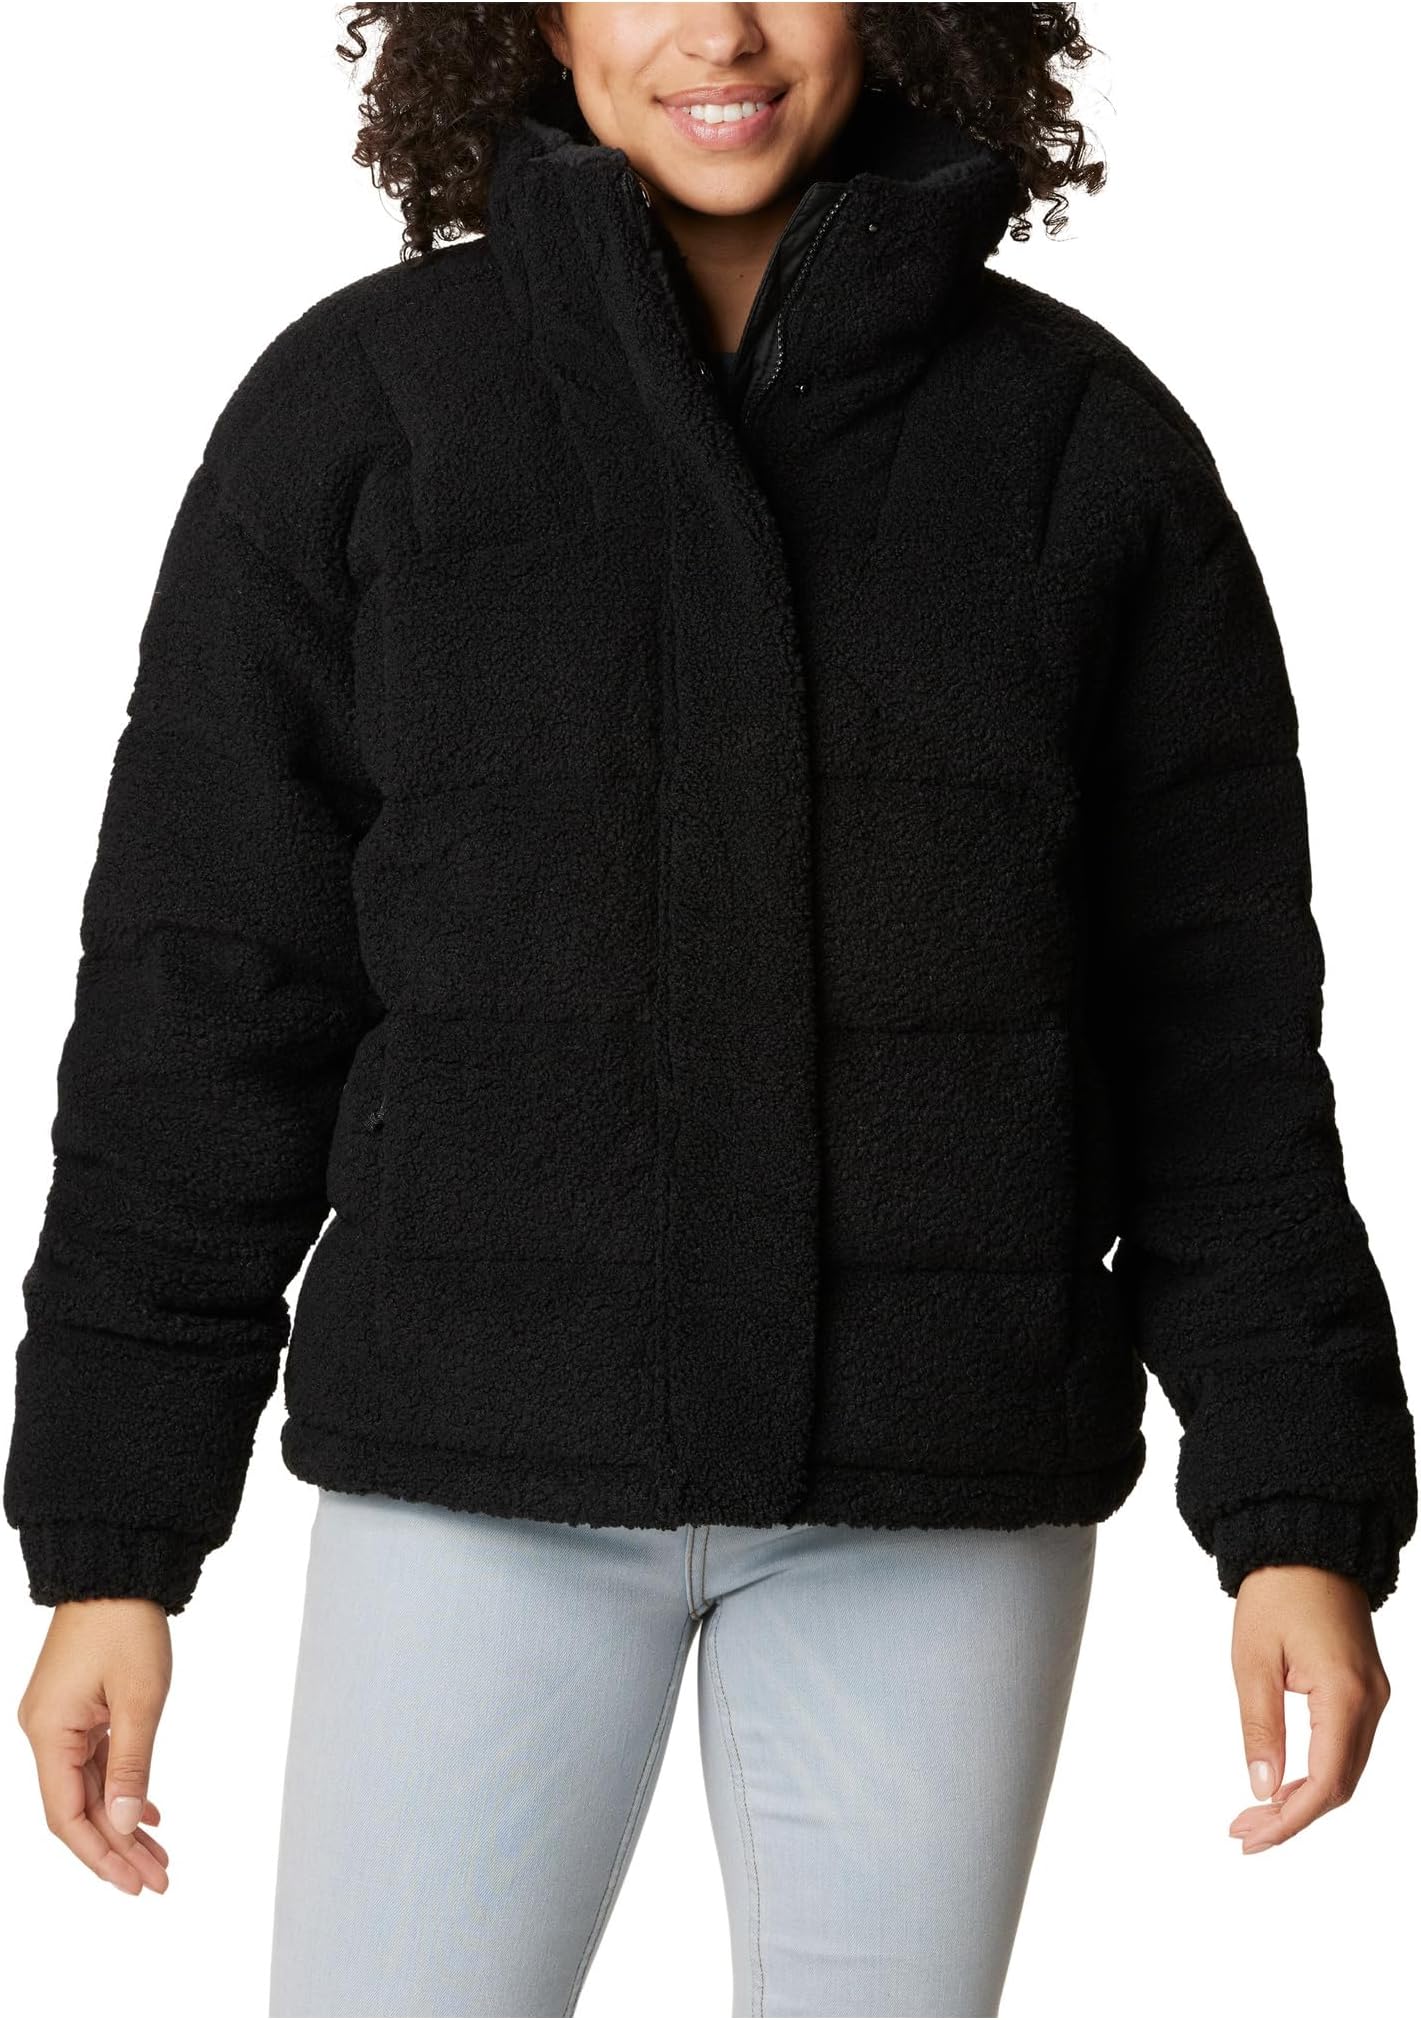 Новинка: куртка Ruby Falls Columbia, цвет Black Doodle Sherpa цена и фото